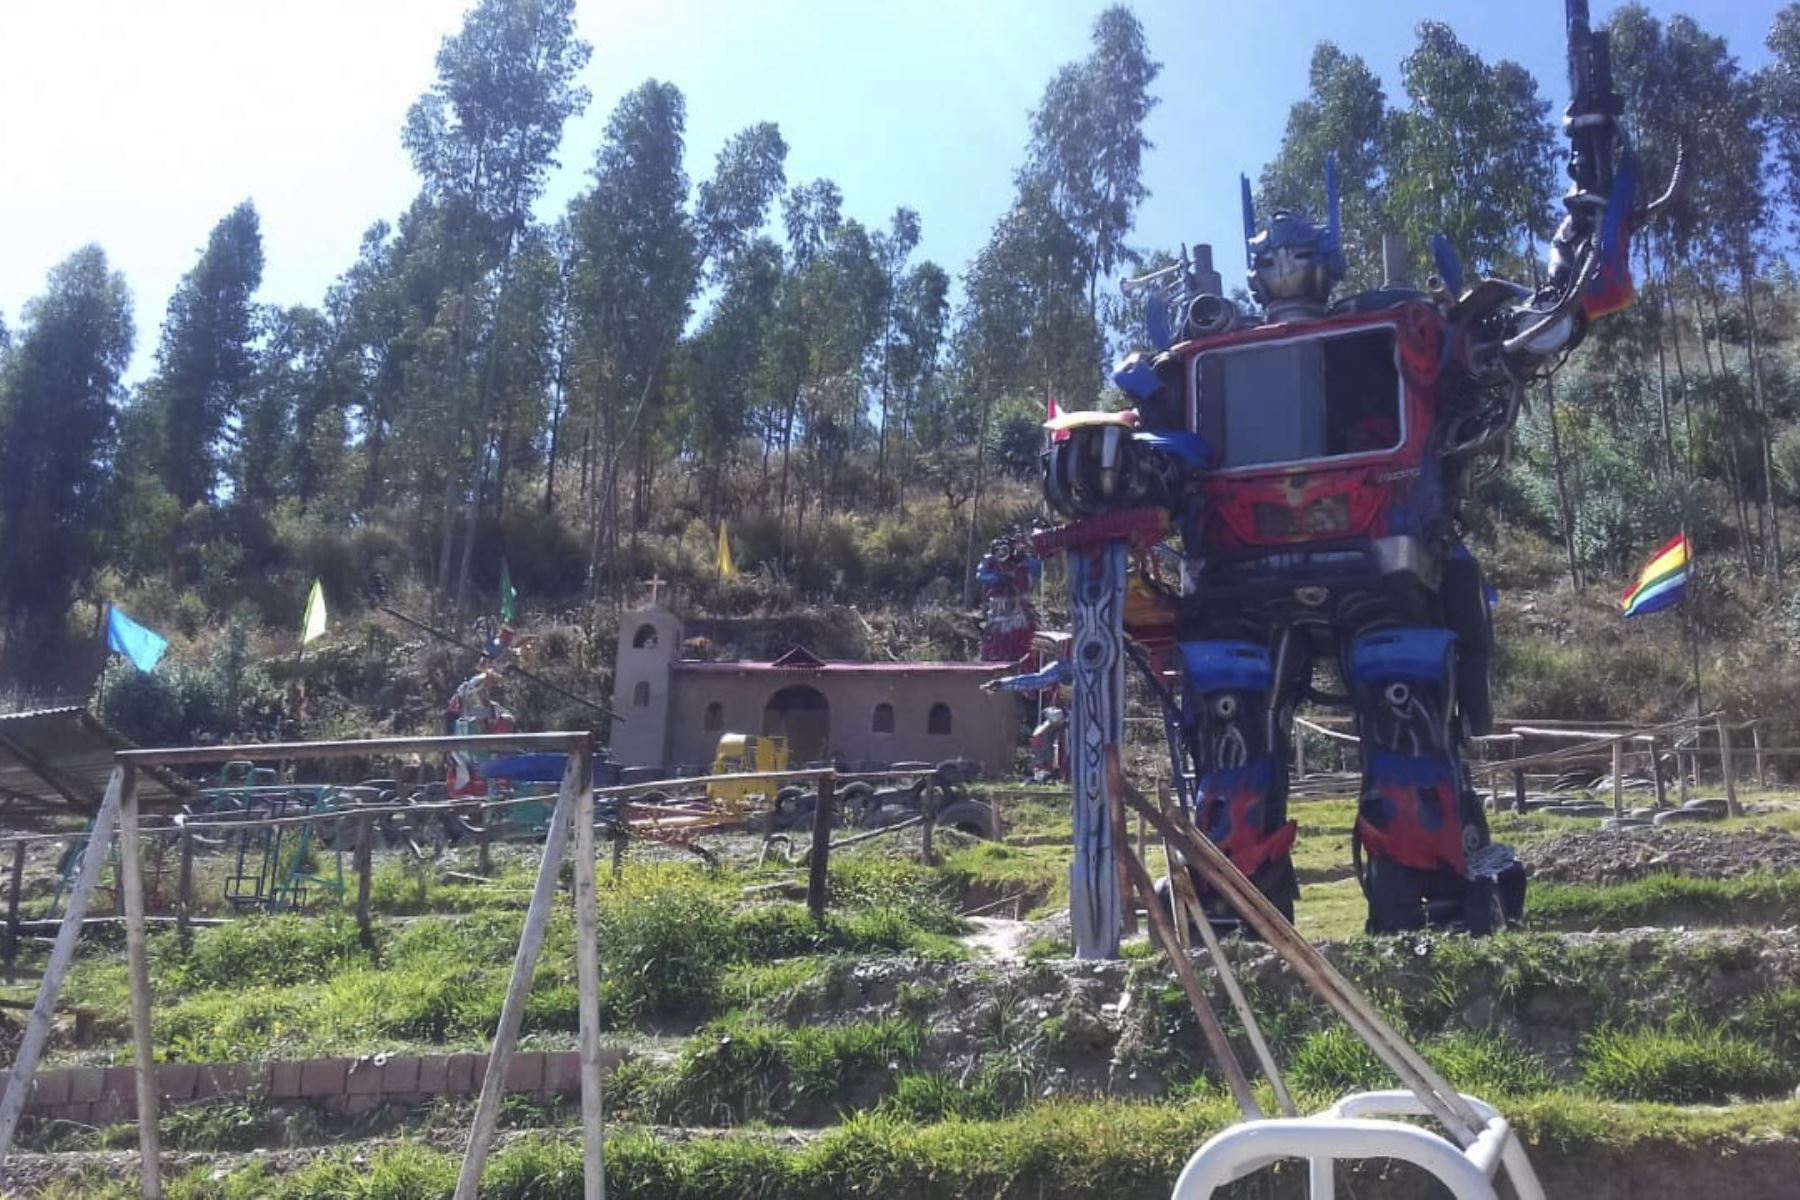 El parque temático Chimparuna, en la región Cusco, se caracteriza por esculturas gigantes hechas con neumáticos desechados. Foto: ANDINA/Neviza TV.